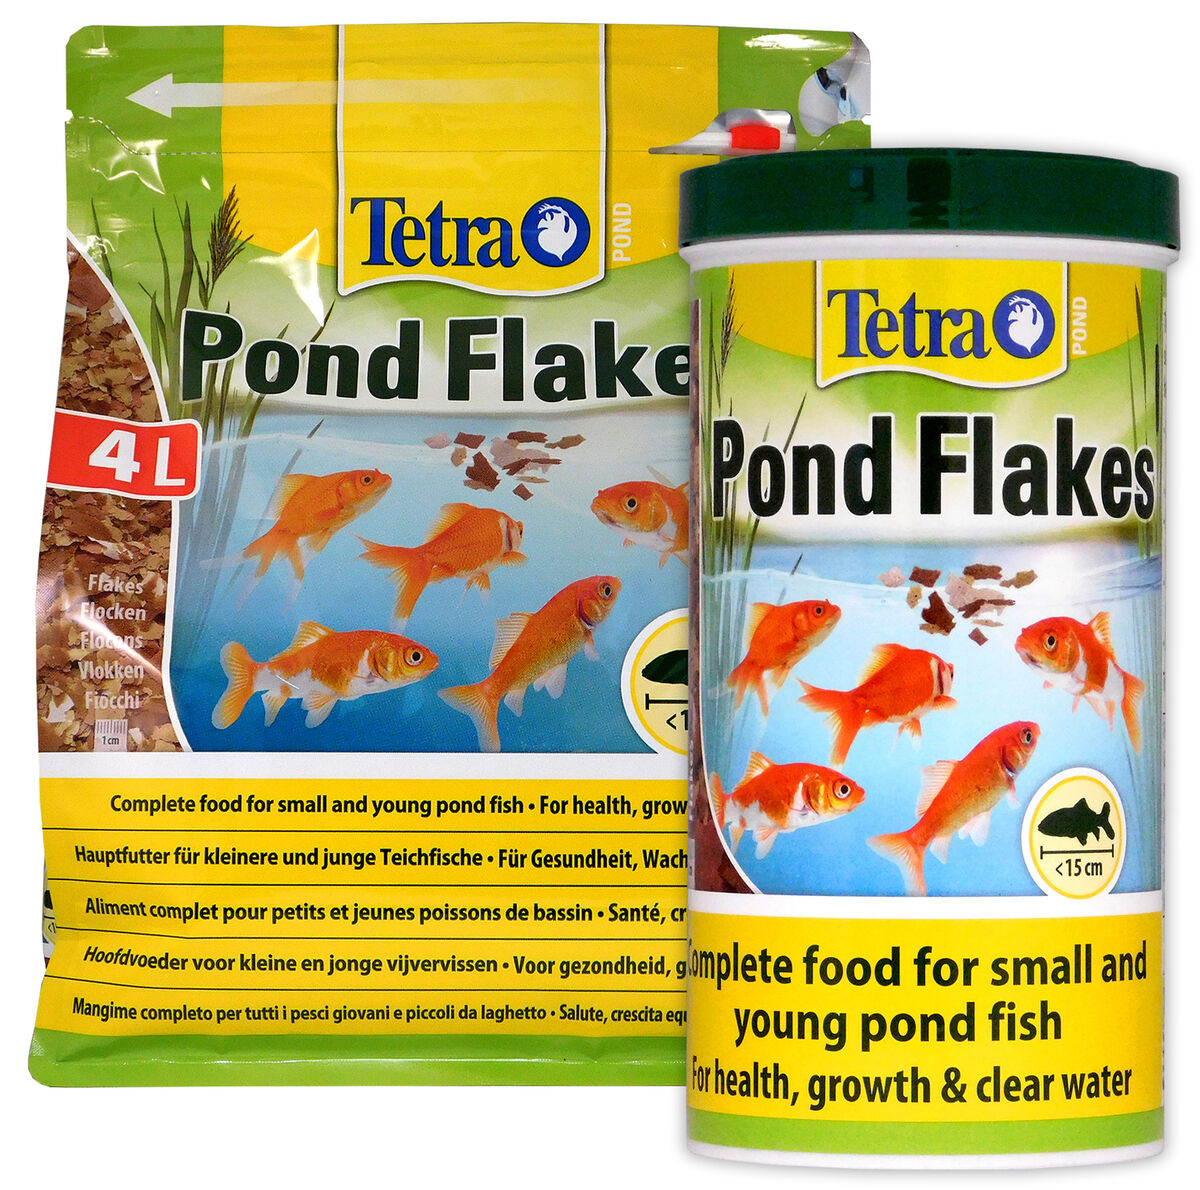 Tetra - Mélange Pond Goldfish Mix pour Poissons Rouges